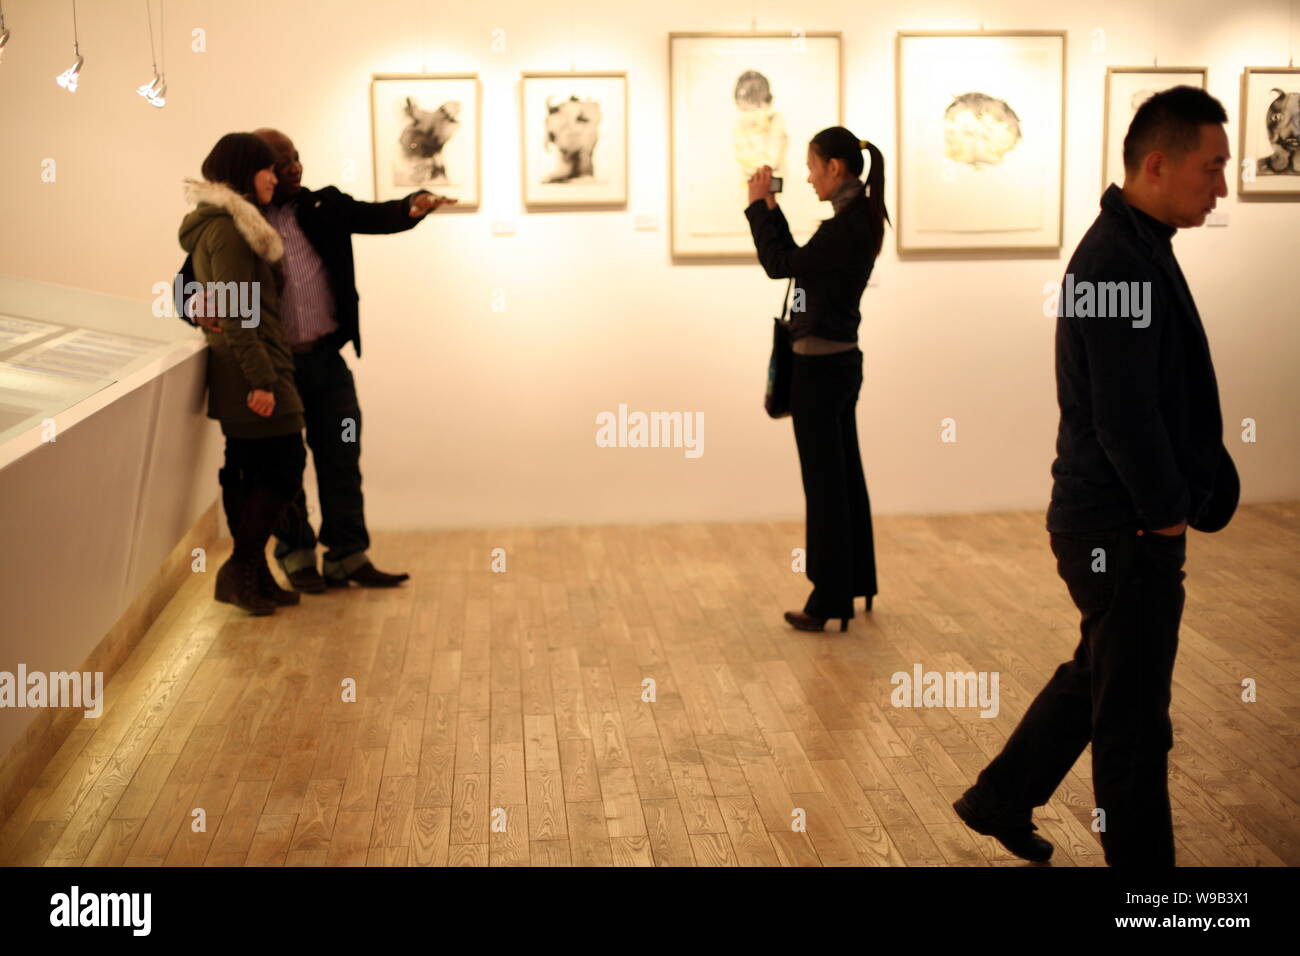 Chinesische artiest Guo Wei, rechts, Spaziergänge Vergangenheit kamerunischen Künstlers Barthelemy Toguo, zweite links, posieren für Fotos mit einem Besucher während der B. Toguo/Guo Stockfoto